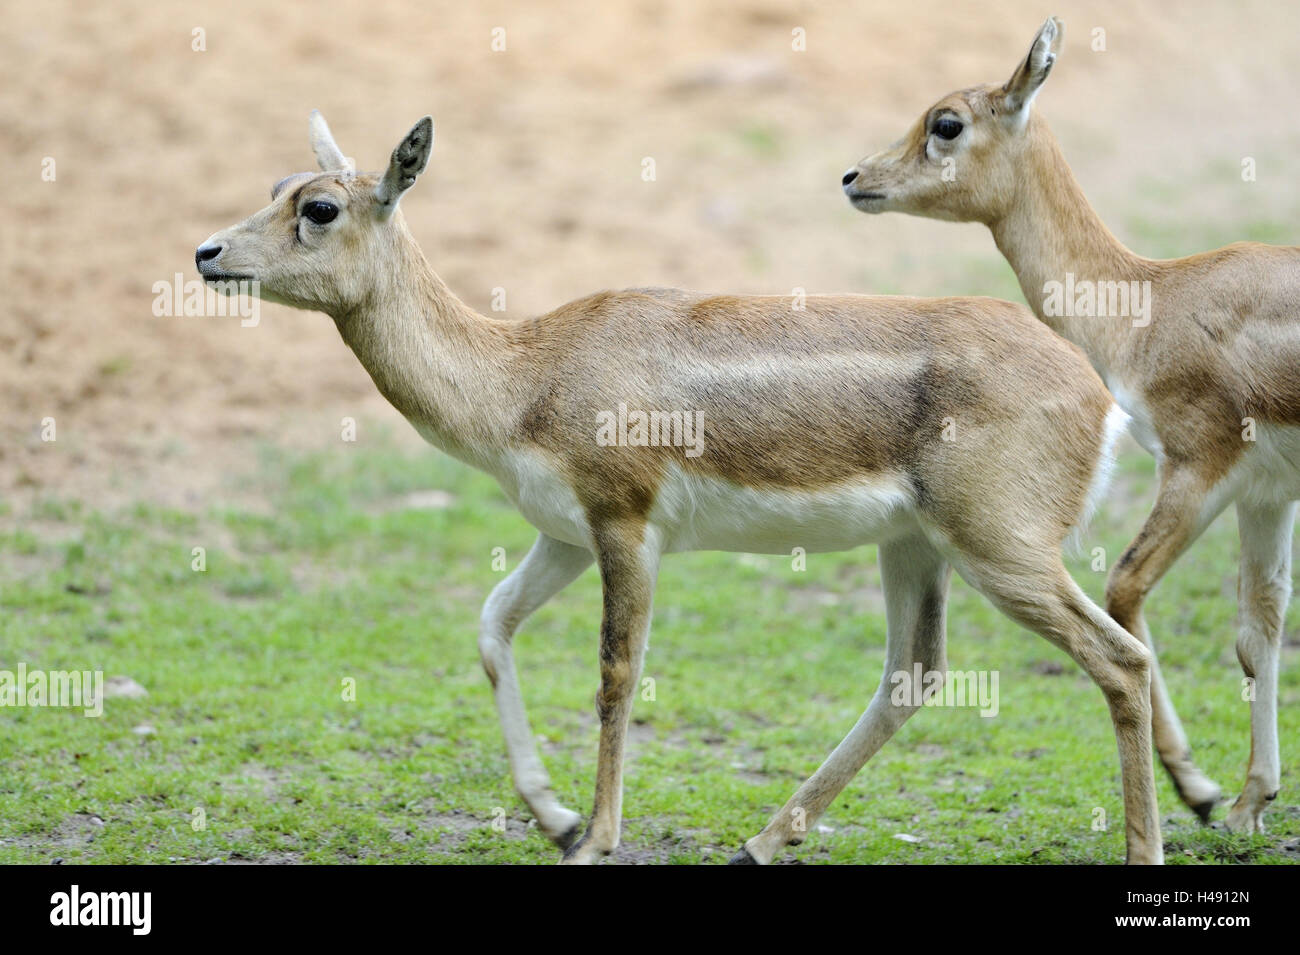 Blackbucks, Antilope cervicapra, running, side view, Stock Photo